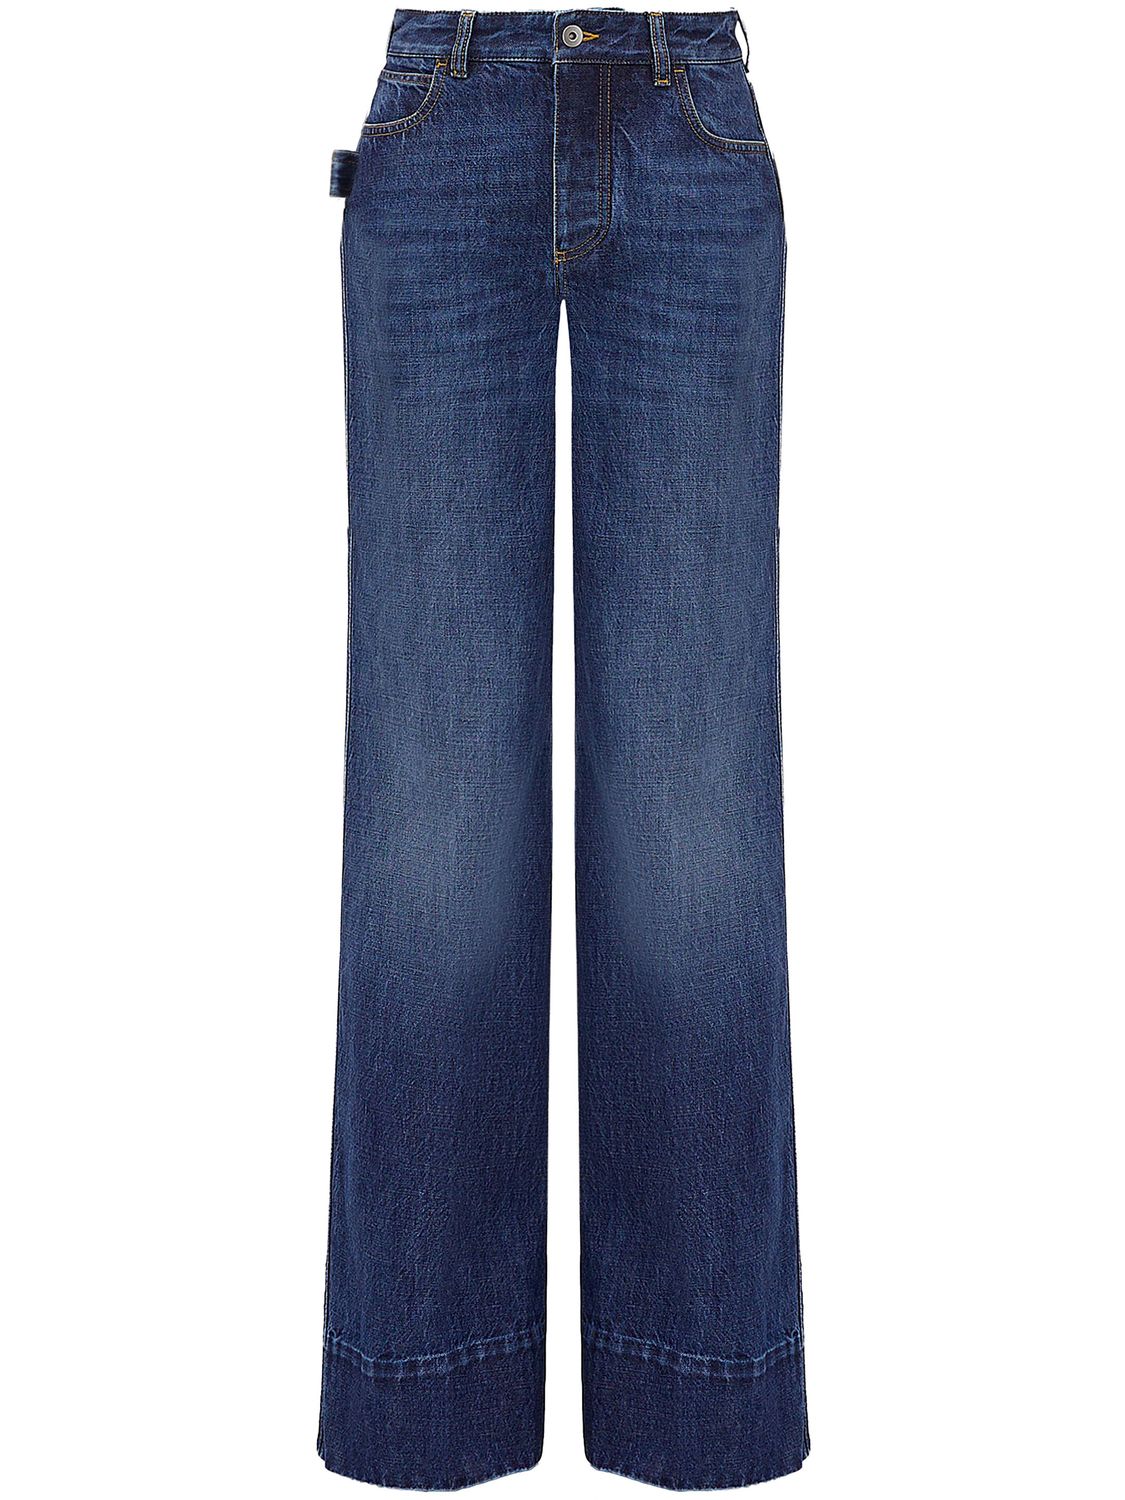 BOTTEGA VENETA Light Blue Wide-Leg Jeans for Women